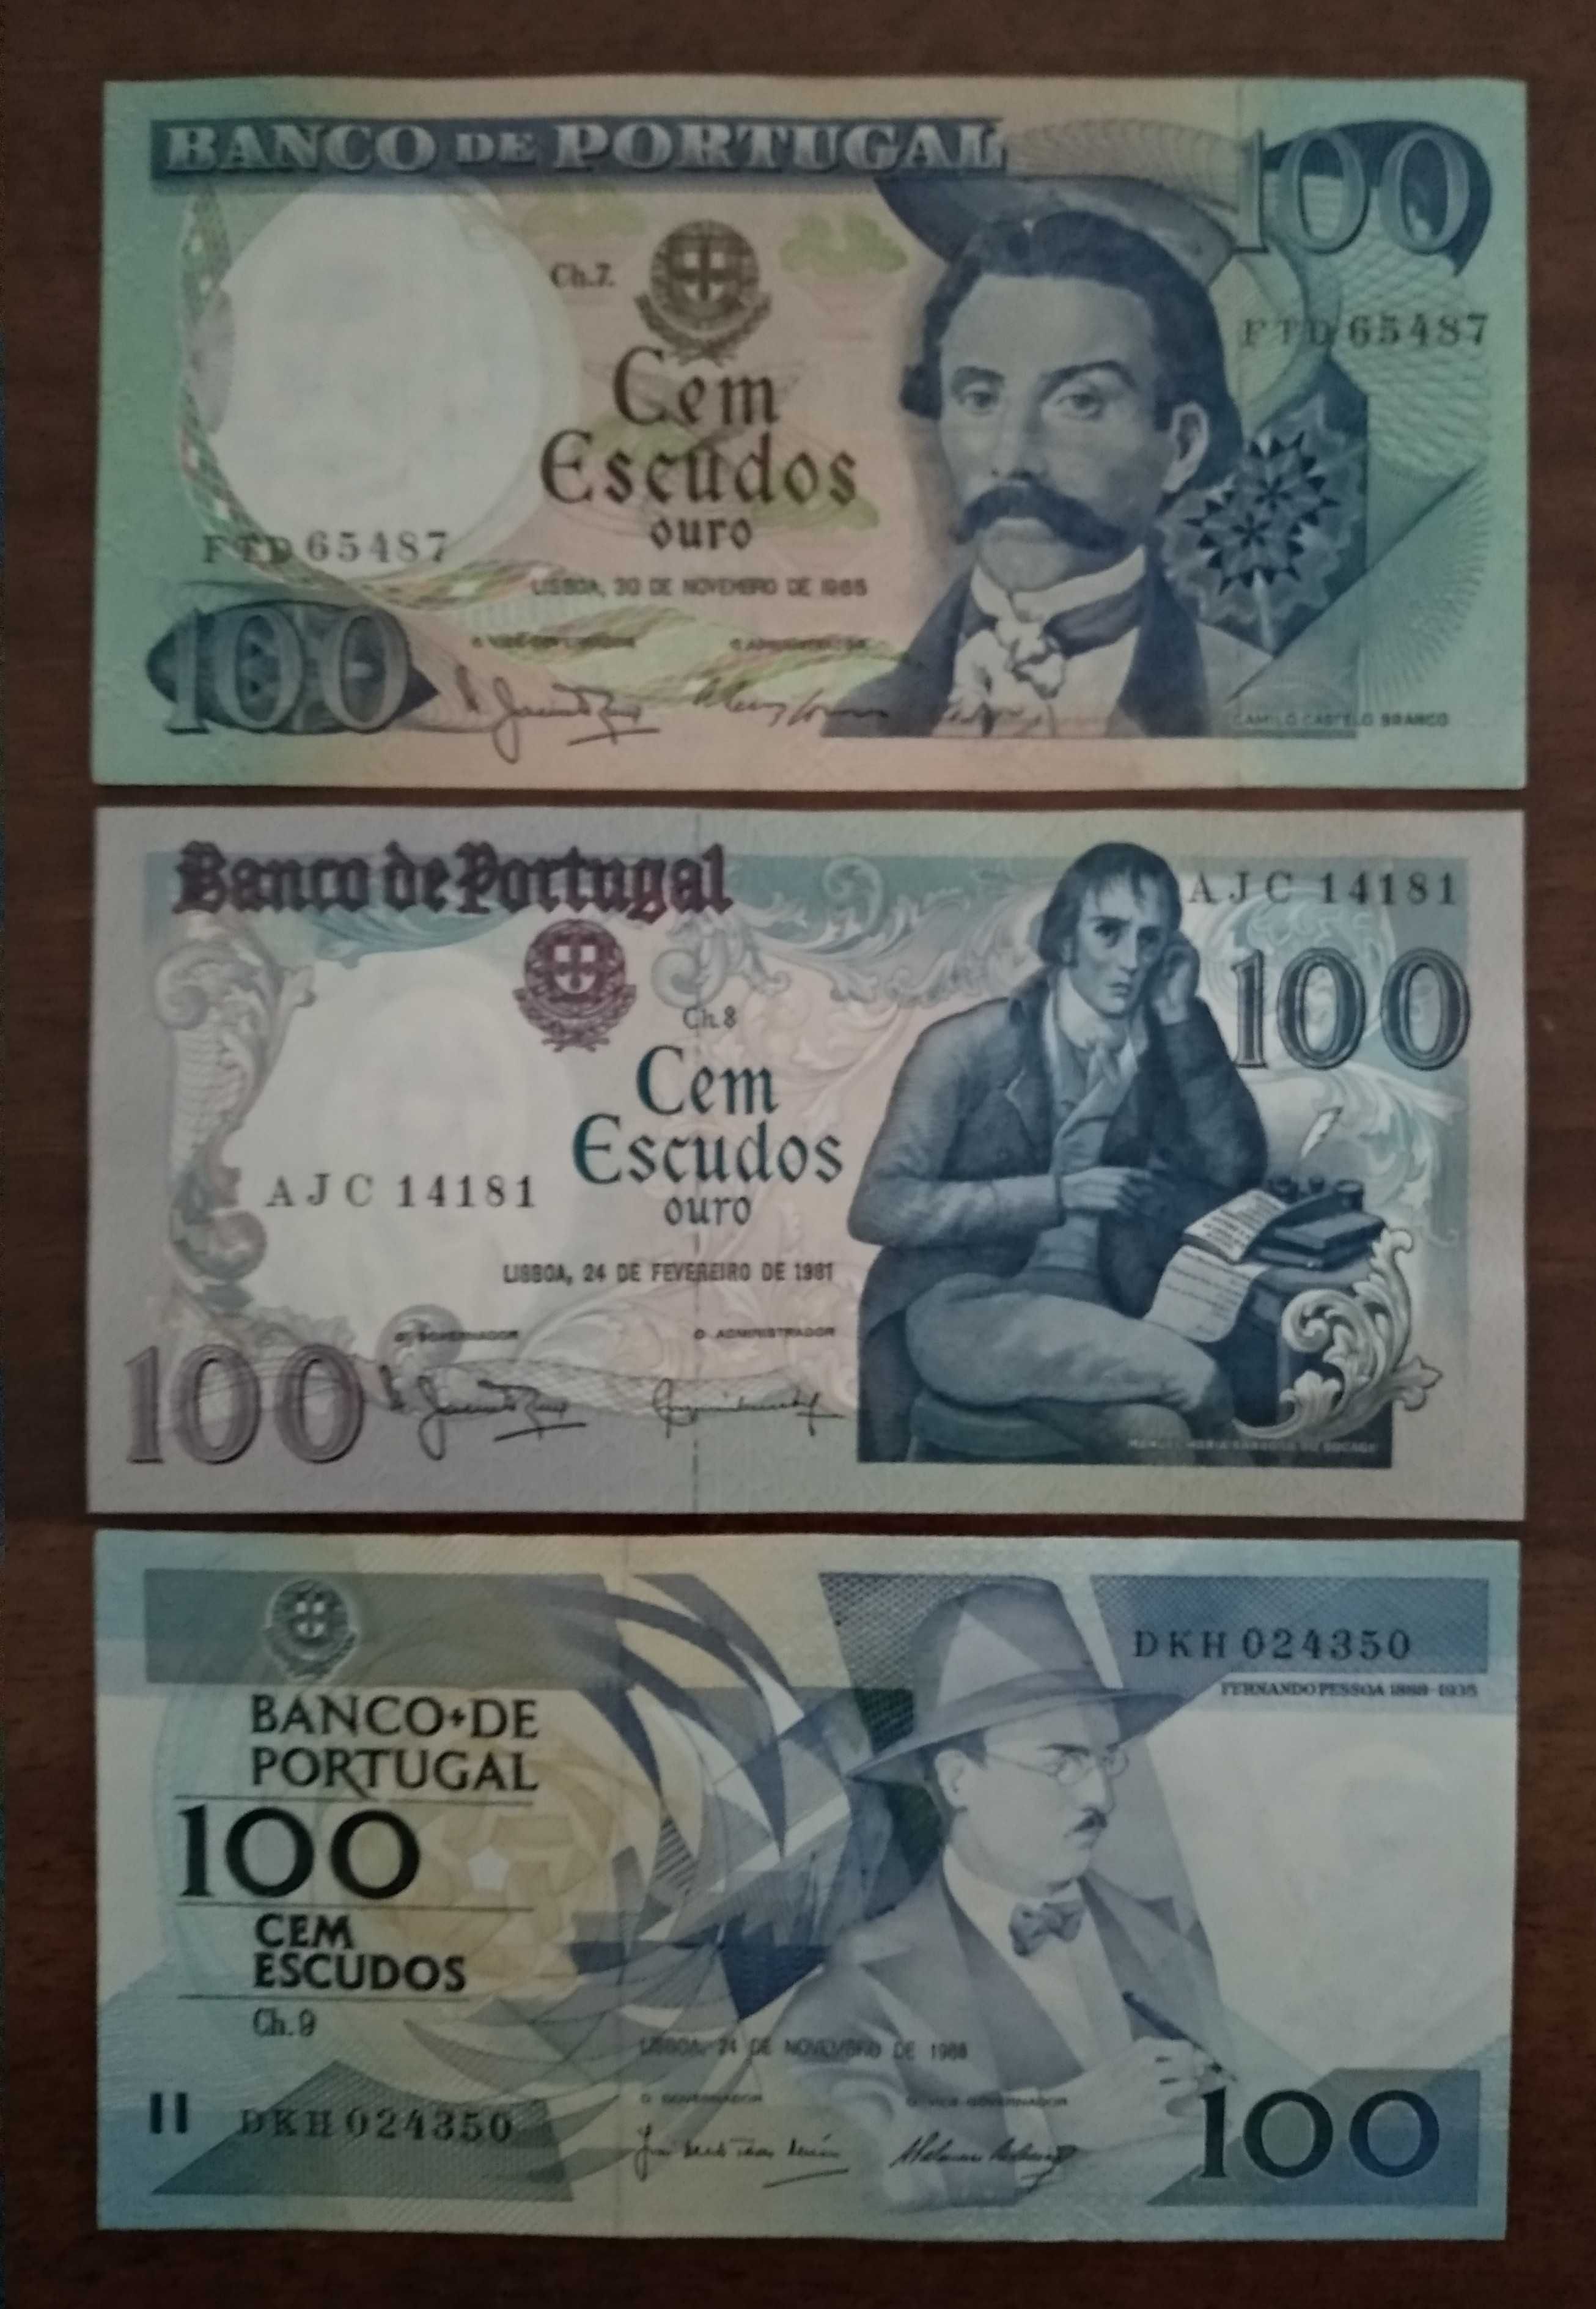 Notas de 100$00 do Banco de Portugal